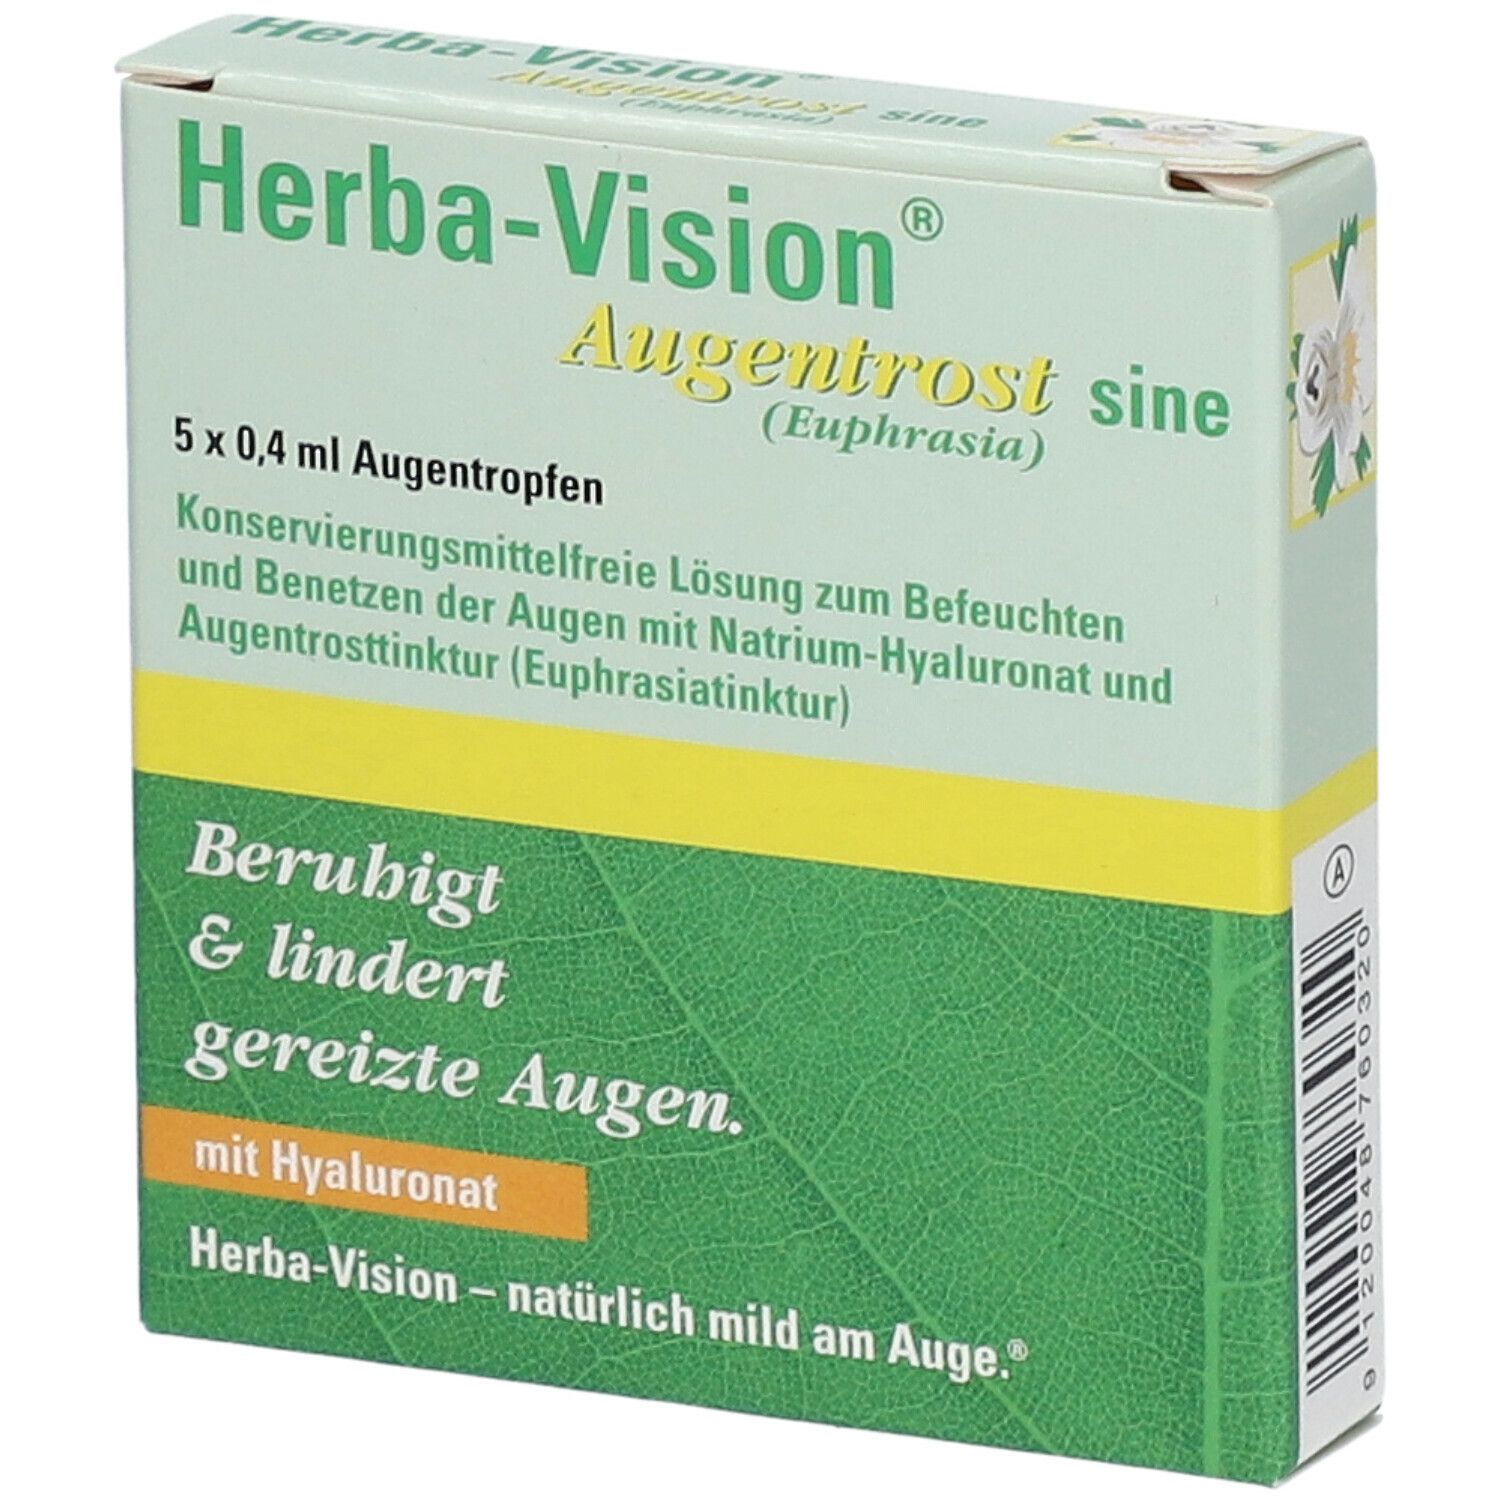 Herba-Vision® Augentrost sine